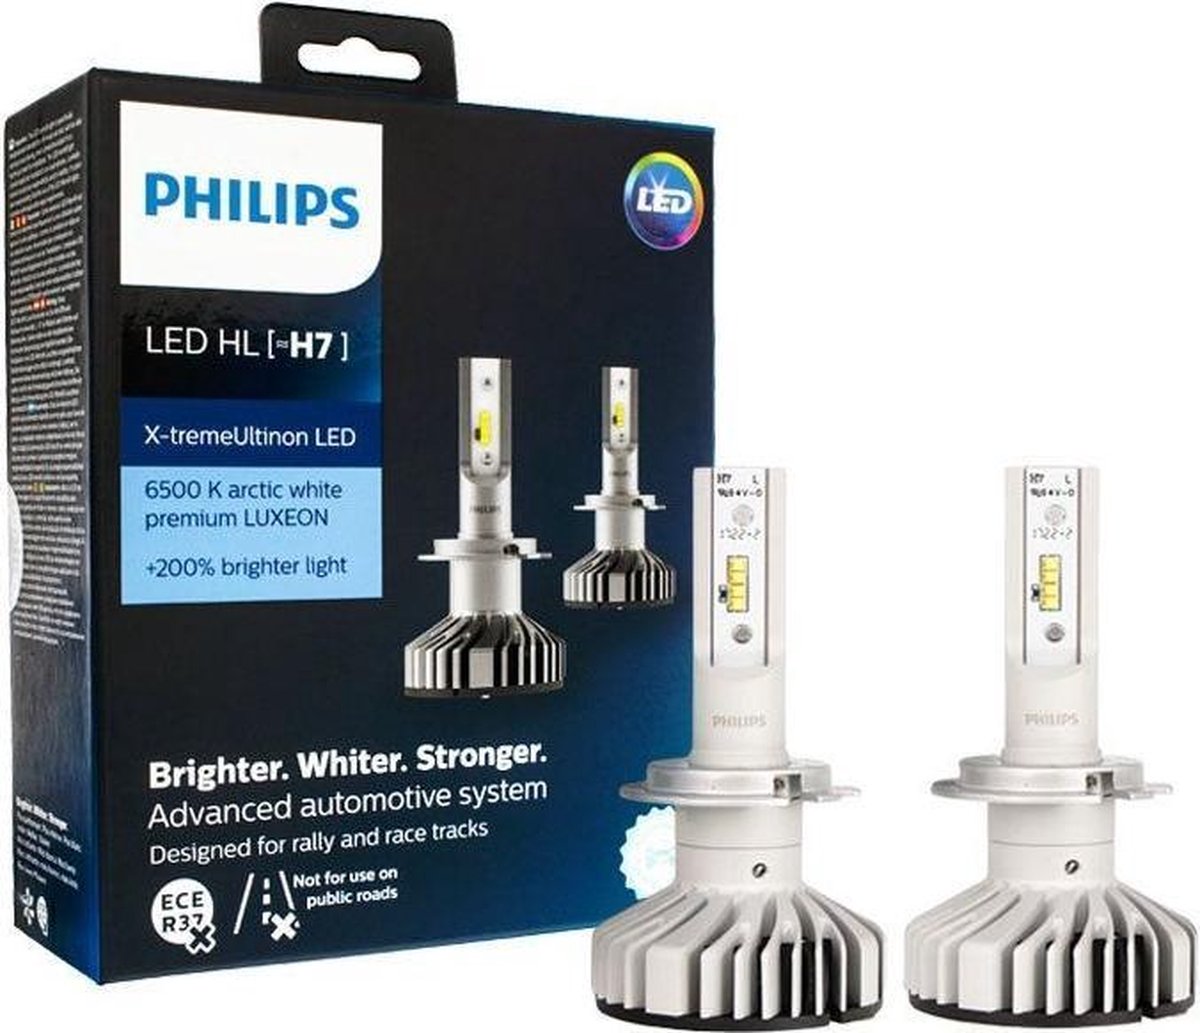 Philips h7 купить. Диодные лампы h7 Philips. Лампа диодная Филипс н7. Диодные лампы Филипс h7. Светодиодные лампы led Philips h7.